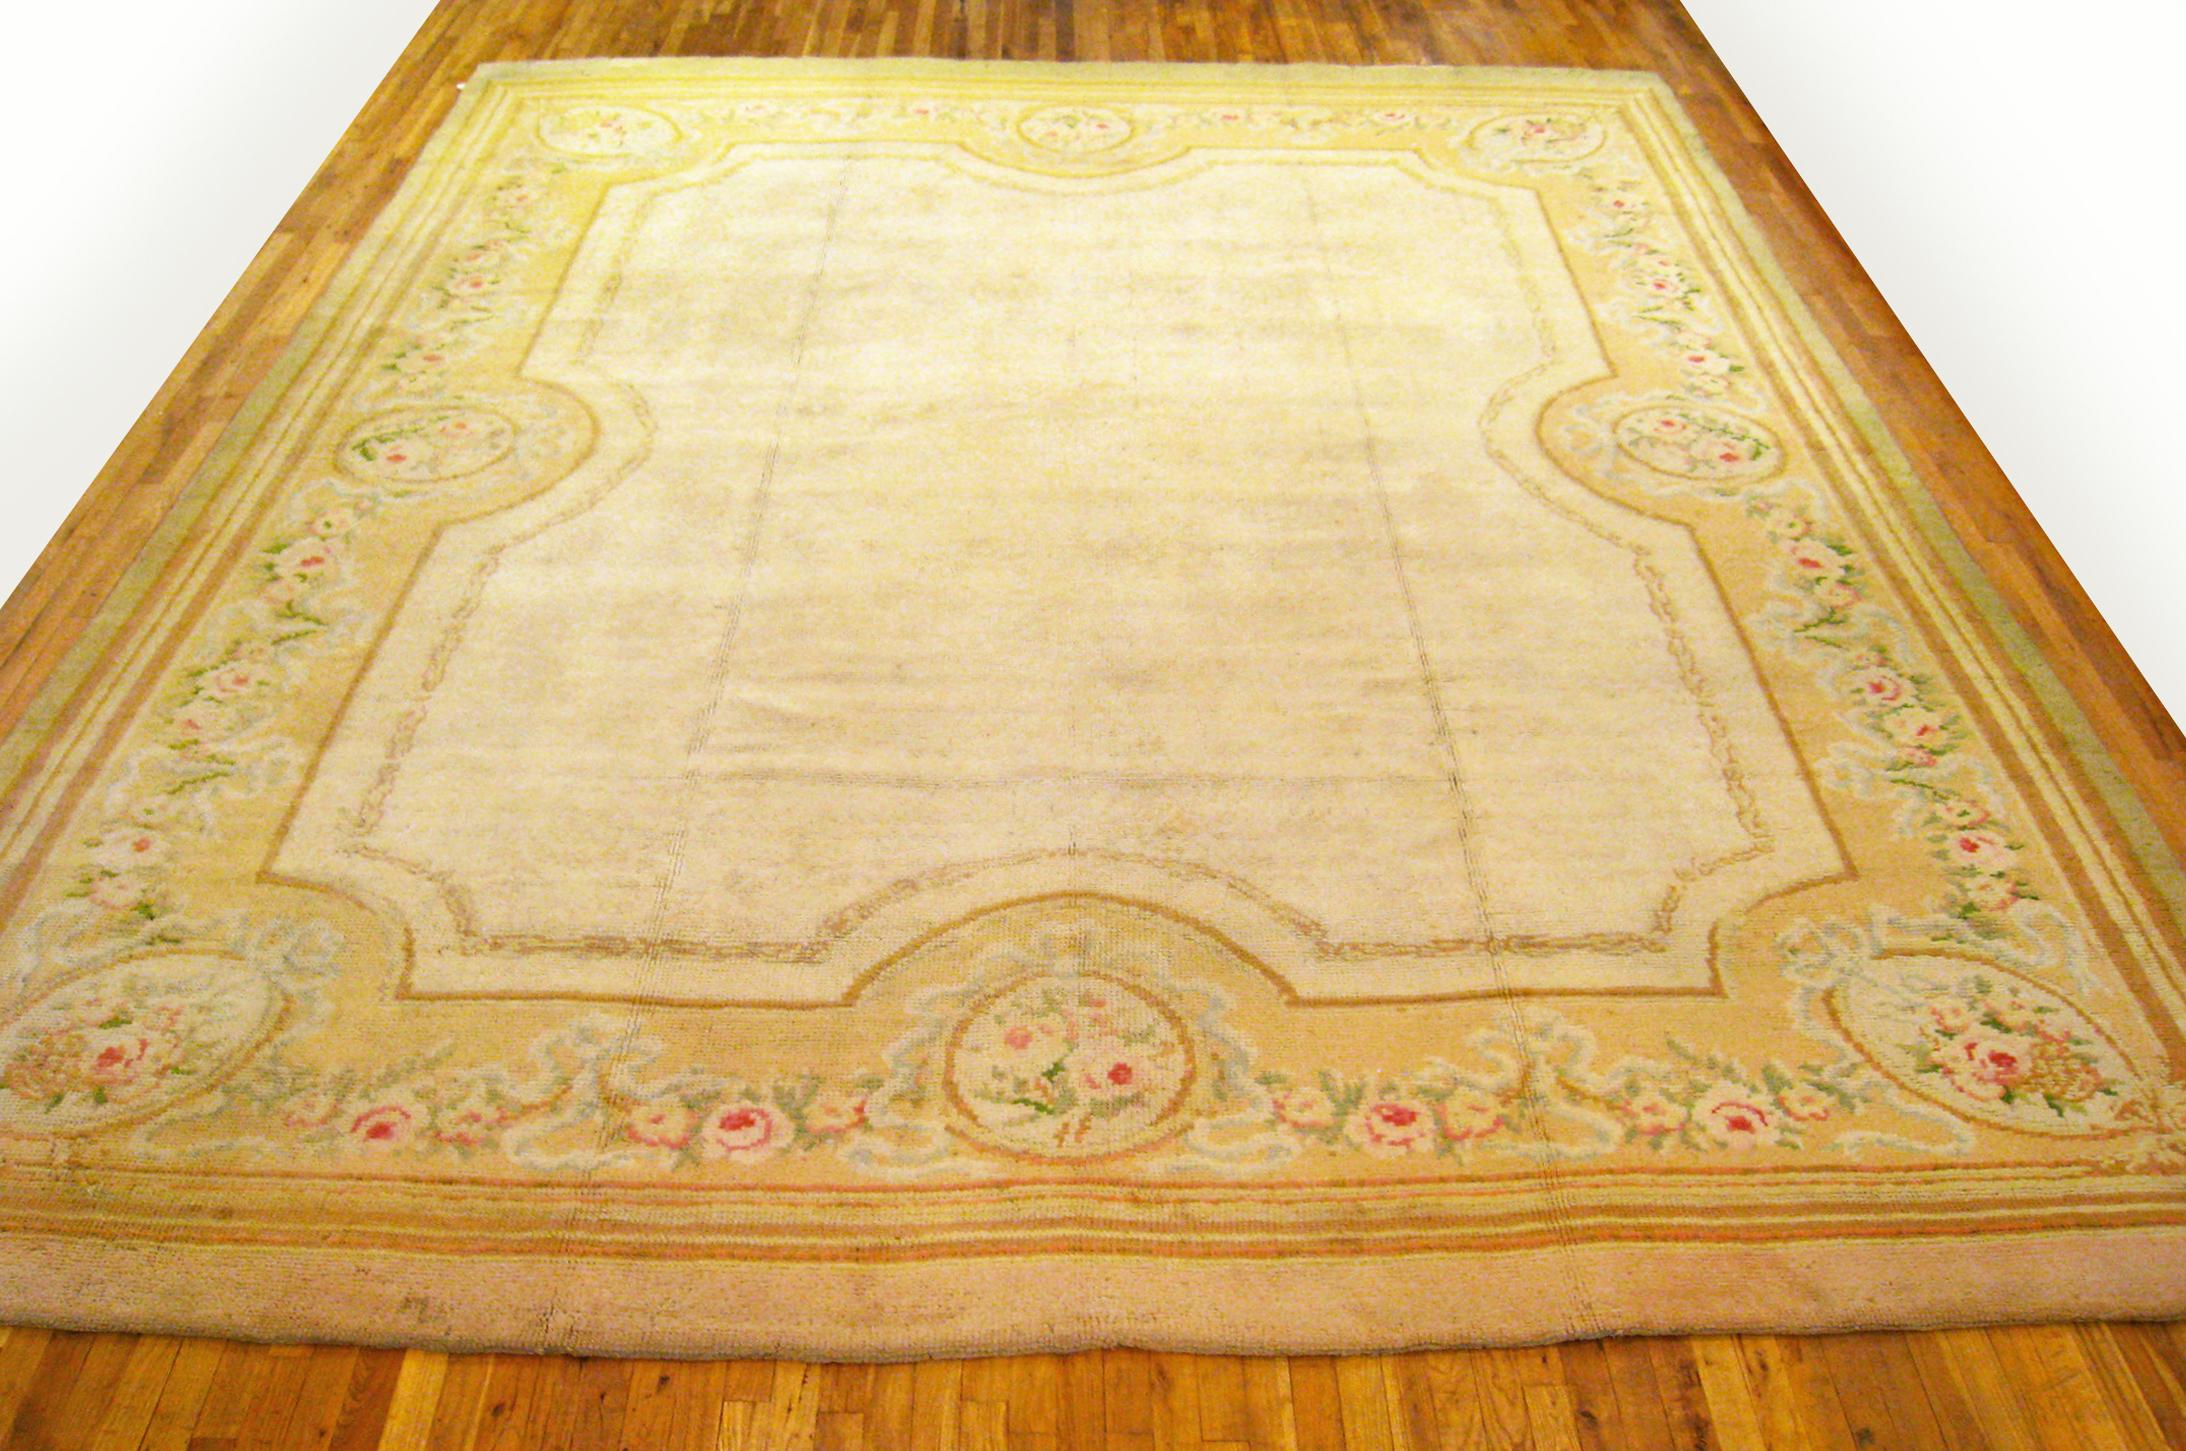 Antiker europäischer Savonnerie Orientteppich

Ein einzigartiger antiker europäischer Savonnerie-Orientalteppich, handgeknüpft mit kurzem Wollflor. Das elfenbeinfarbene Hauptfeld ist offen gestaltet, die äußere Umrandung ist rosa. Im Großformat,